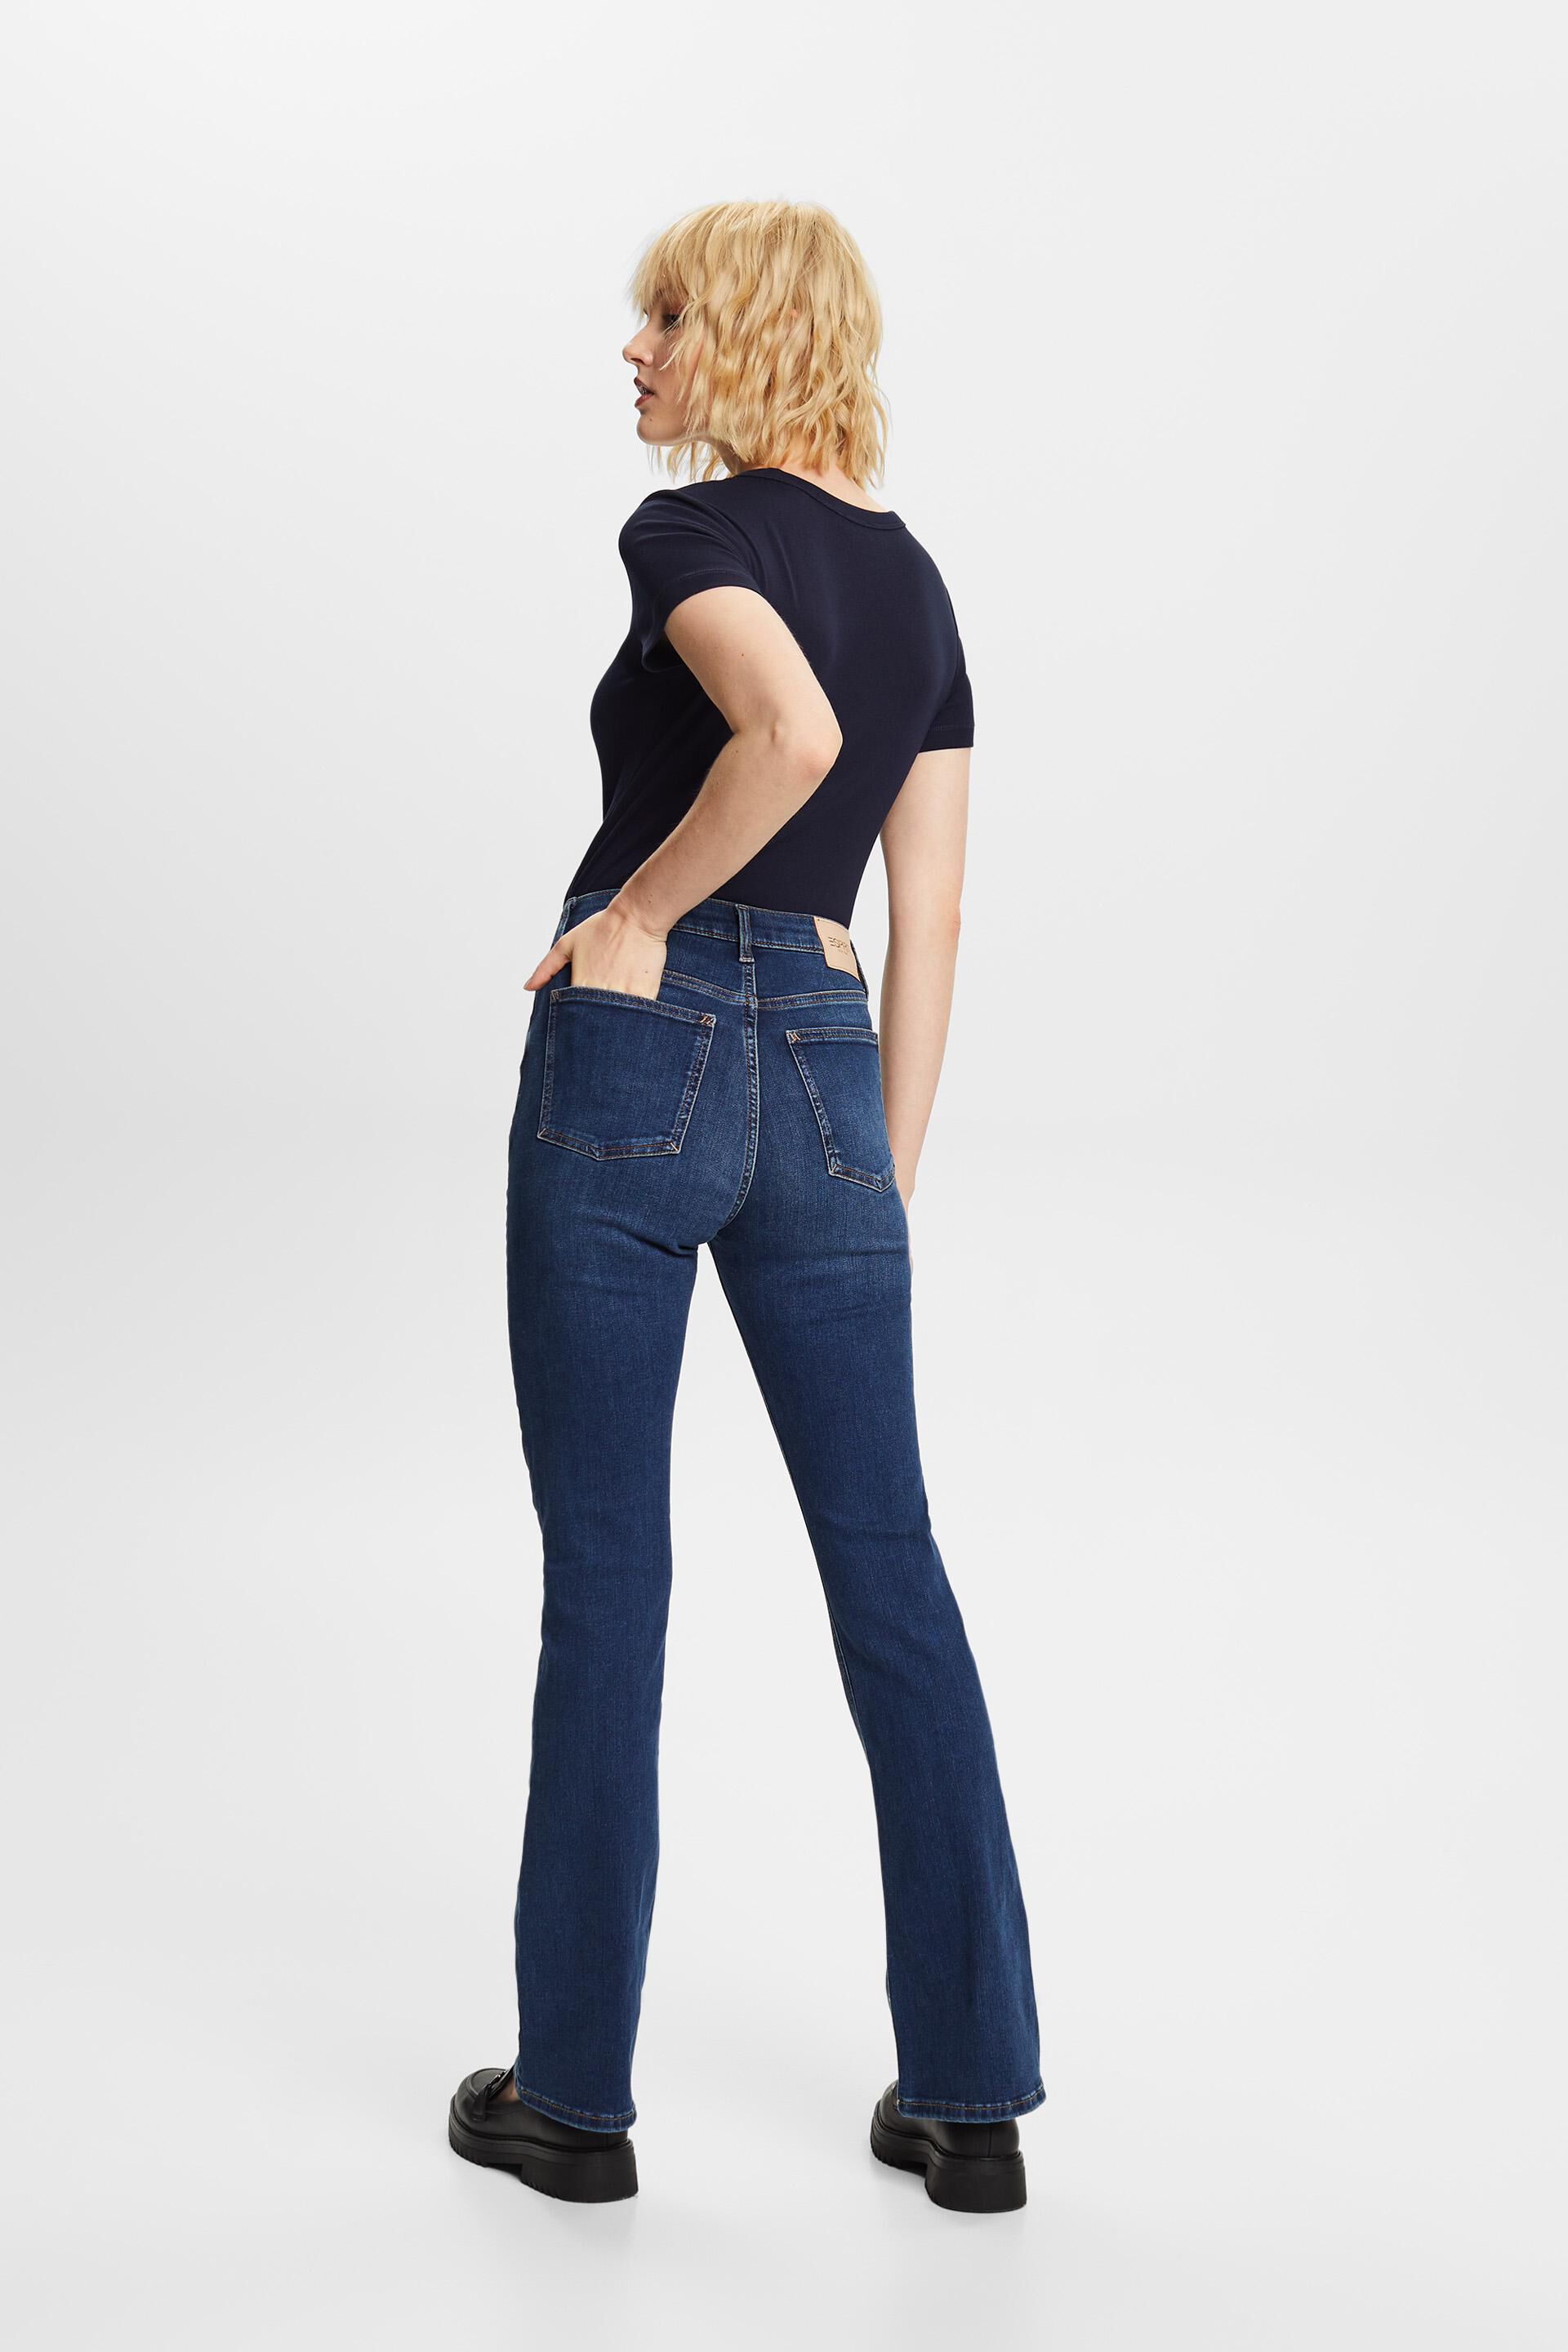 Esprit Damen Recycelt: Bootcut-Jeans mit hohem Bund